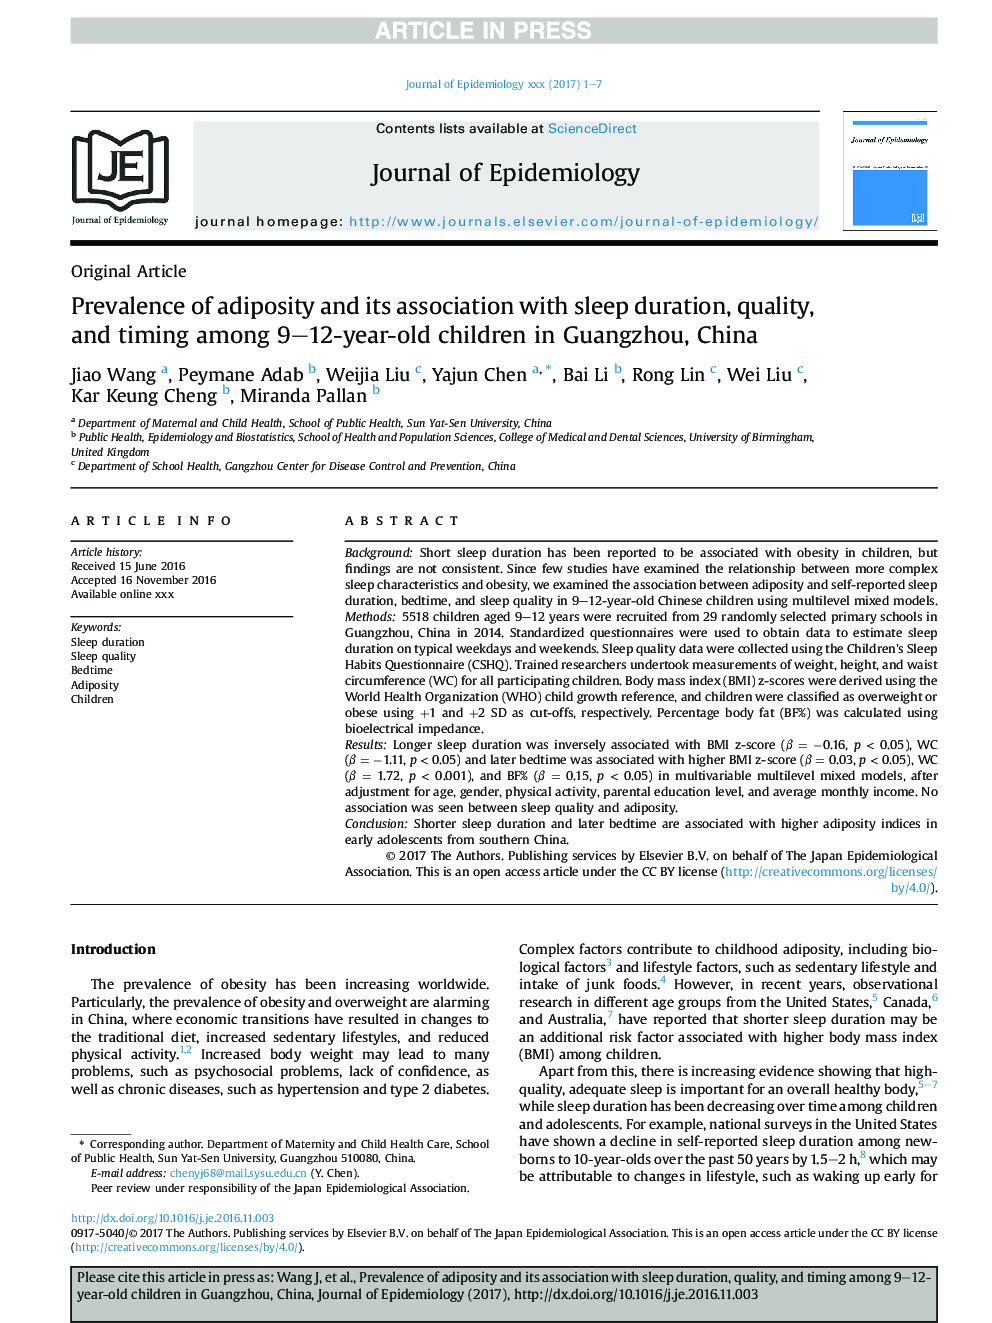 شیوع چاقی و ارتباط آن با مدت، کیفیت و زمان خواب در کودکان 9 تا 12 ساله در گوانگژو، چین 